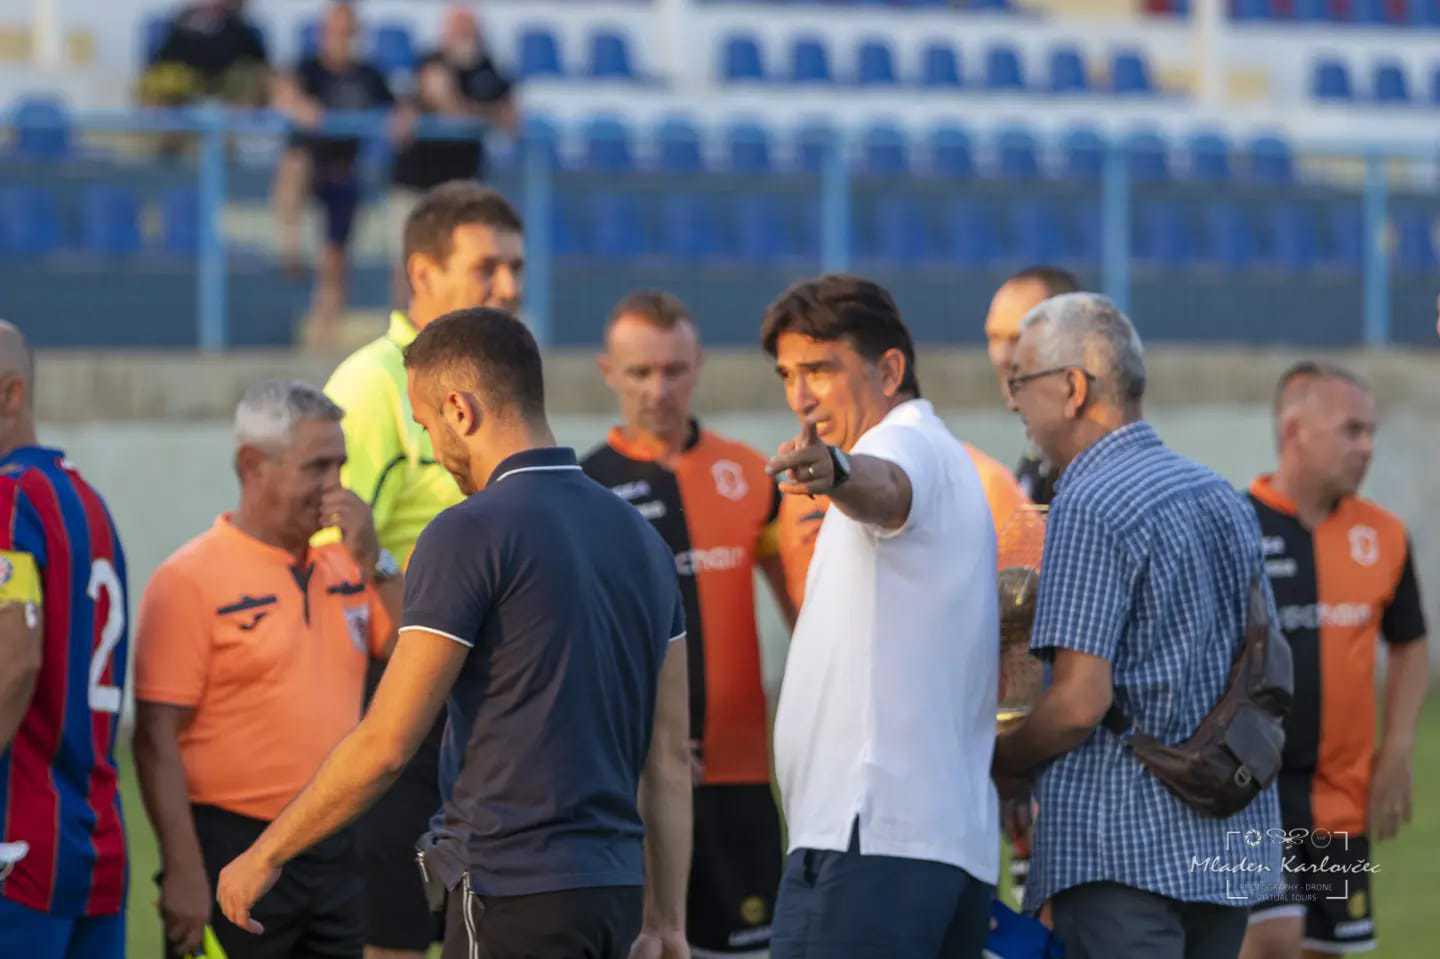 Zadarski - Na utakmicu veterana NK Varaždin i HNK Hajduk Split